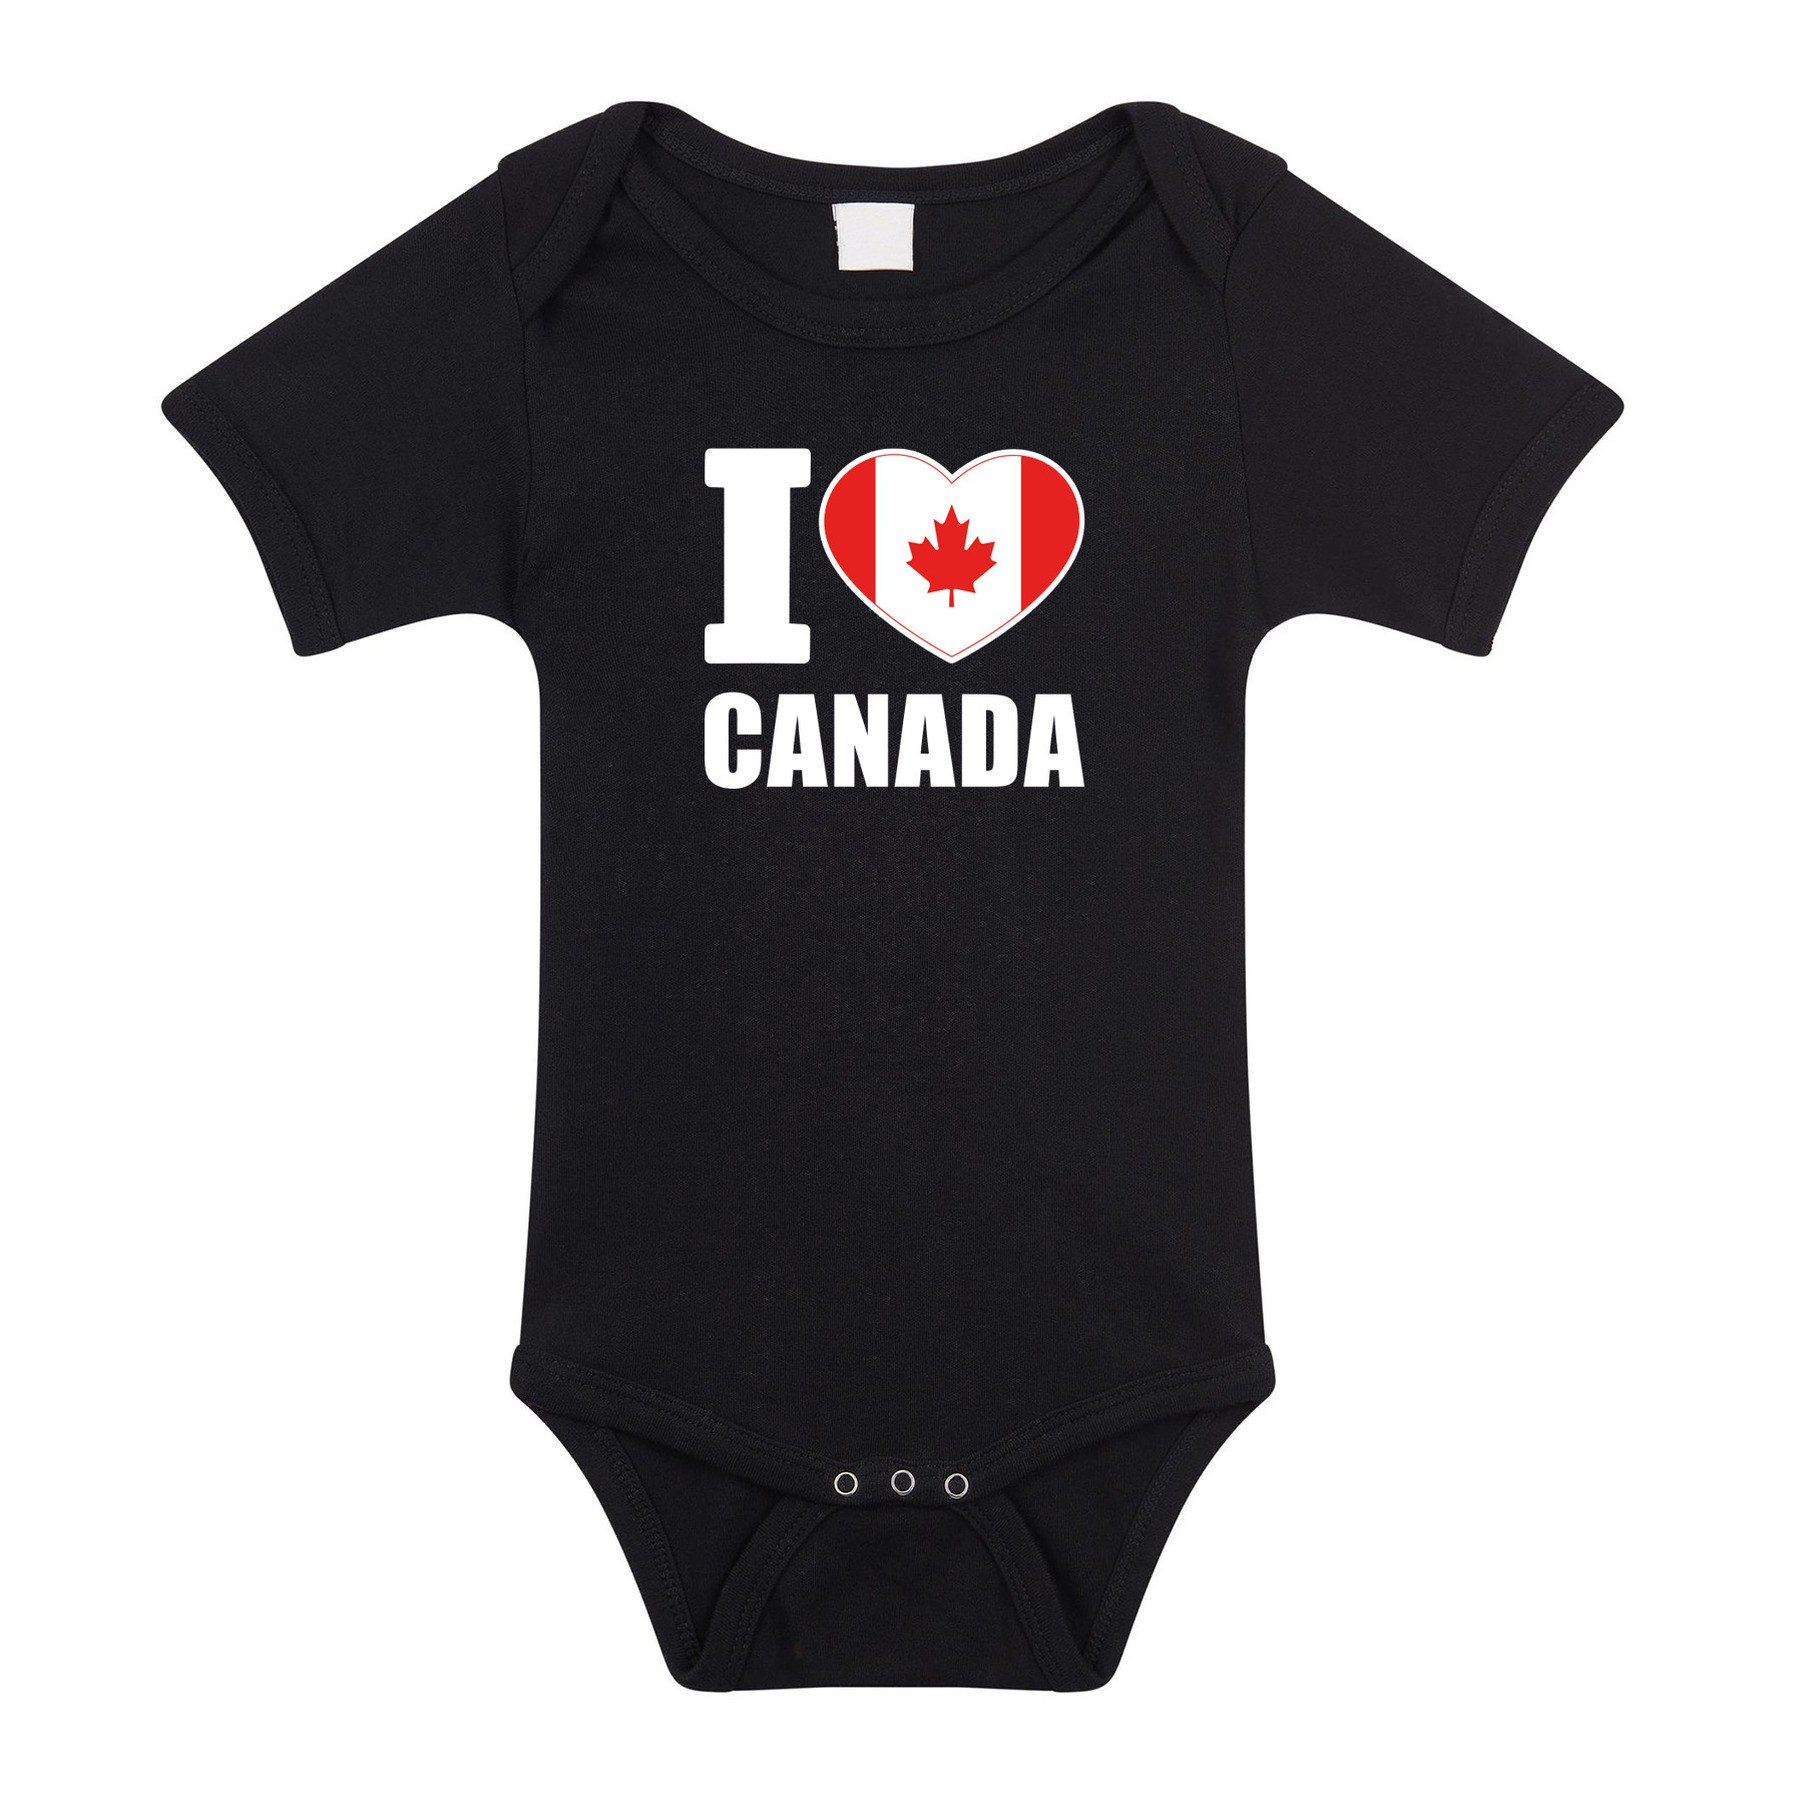 I love Canada baby rompertje zwart jongen-meisje